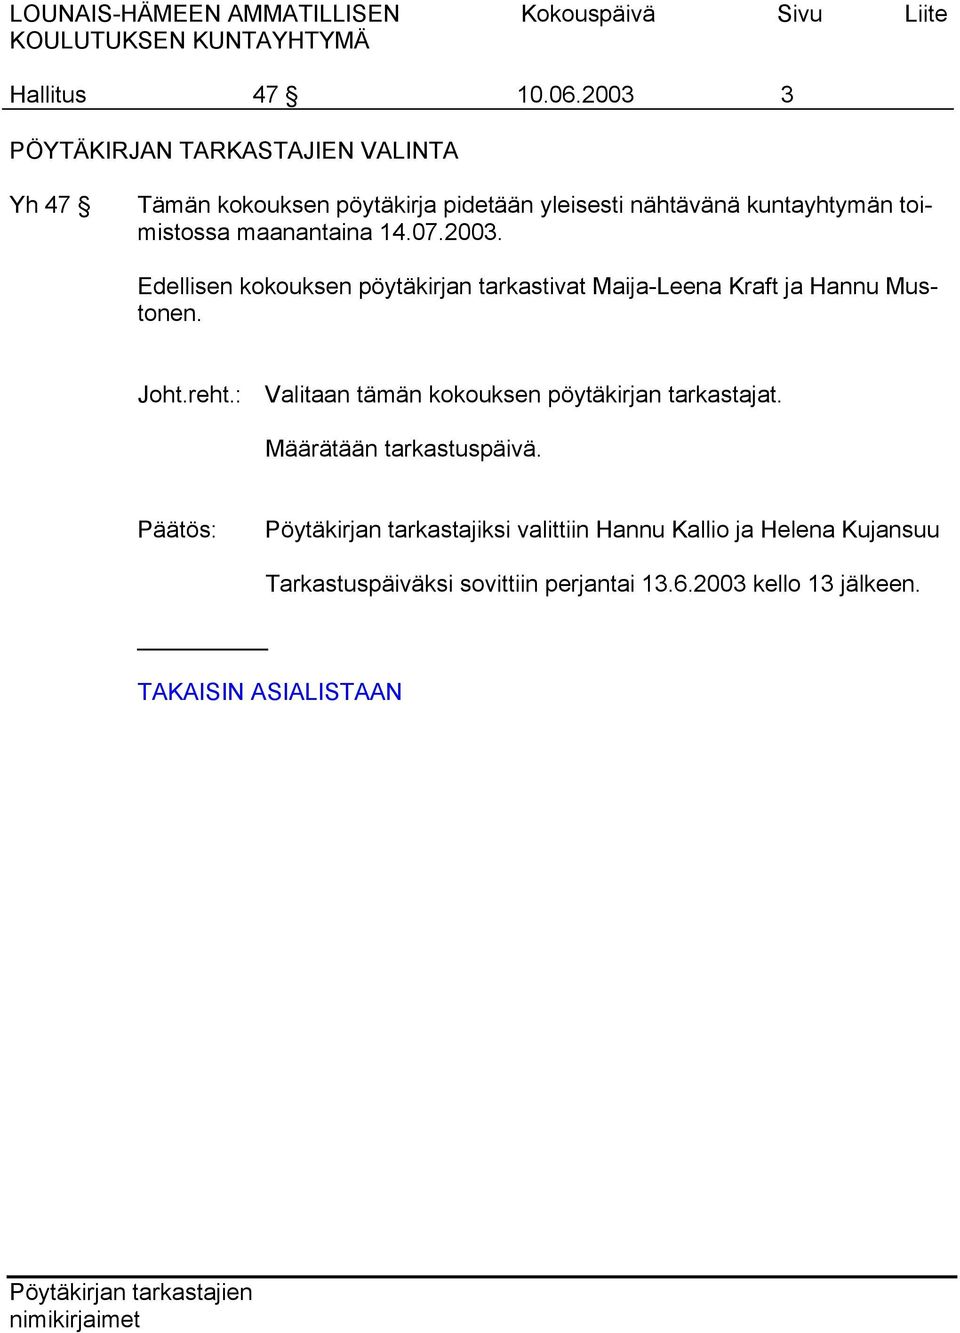 toimistossa maanantaina 14.07.2003. Edellisen kokouksen pöytäkirjan tarkastivat Maija-Leena Kraft ja Hannu Mustonen.